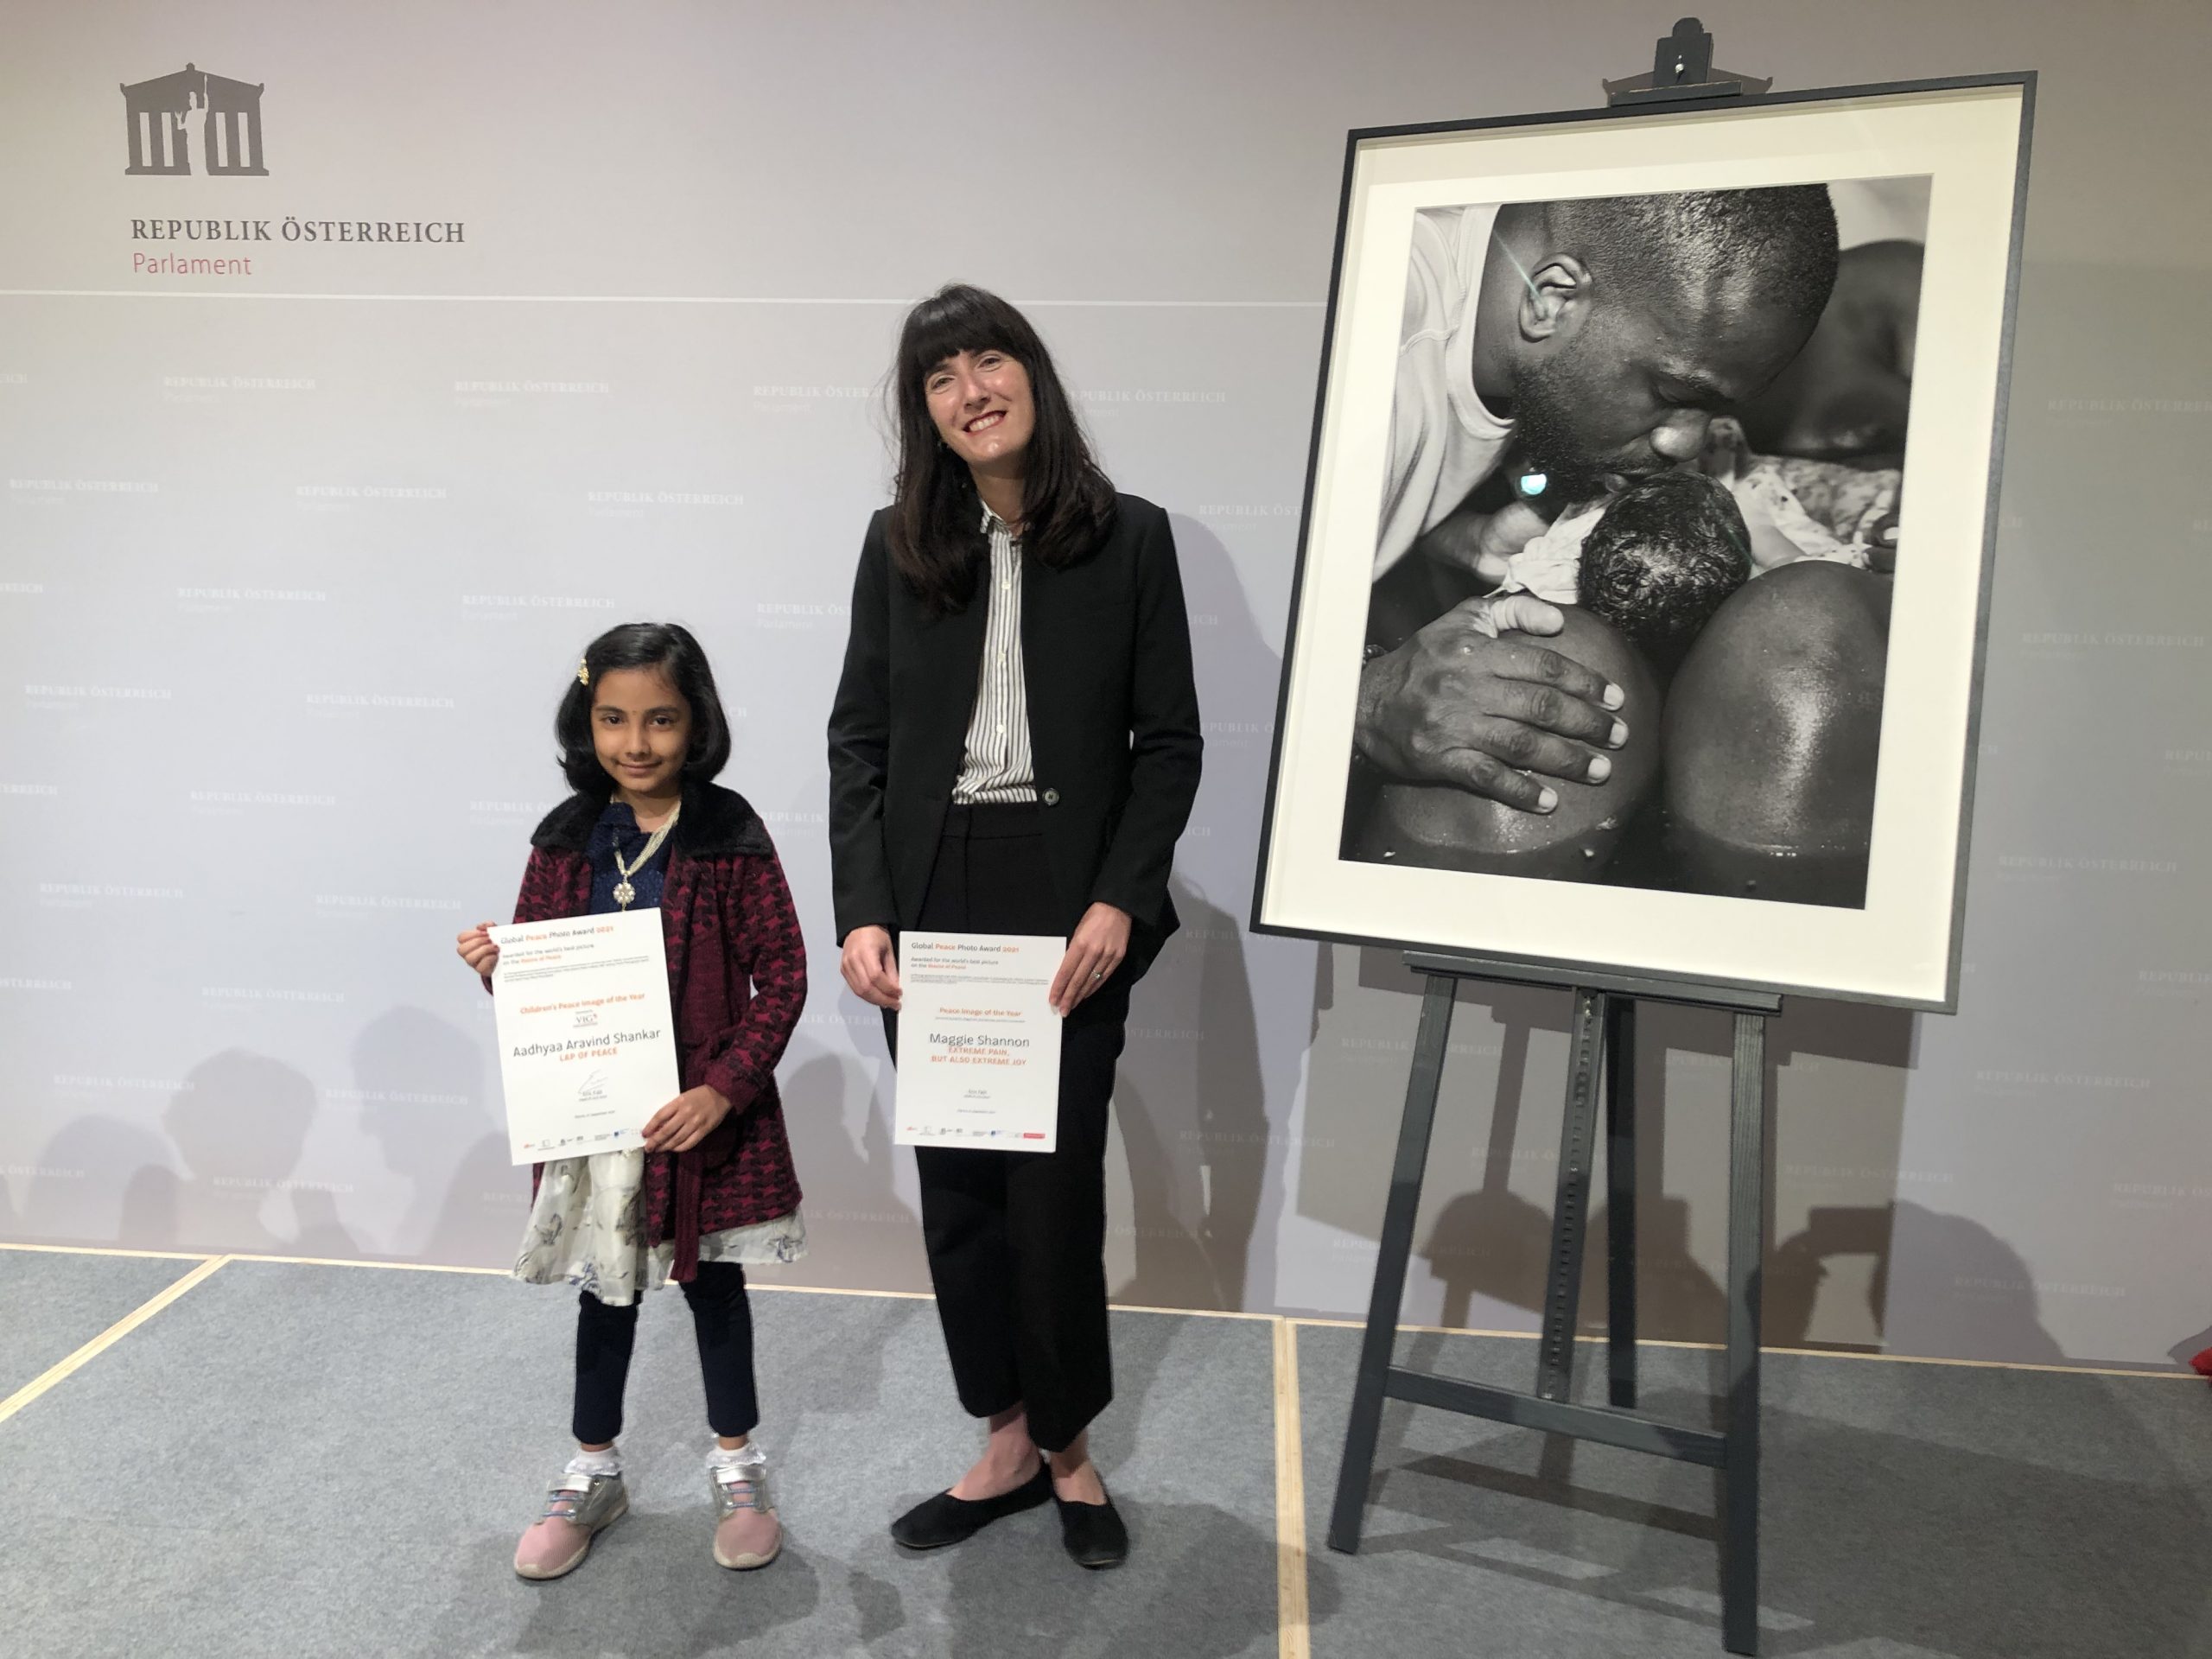 Definitiv ein Highlight der Fotografie war der Global Peace Photo Award: Hier zu sehen die glücklichen Gewinnerinnen des Friedensbild in der Kinder- und Jugendkategorie, die siebenjährige Aadhyaa Aravind Shankar und die Fotografin des Friedensbild des Jahres, Maggie Shannon. (c) Global Peace Photo Award